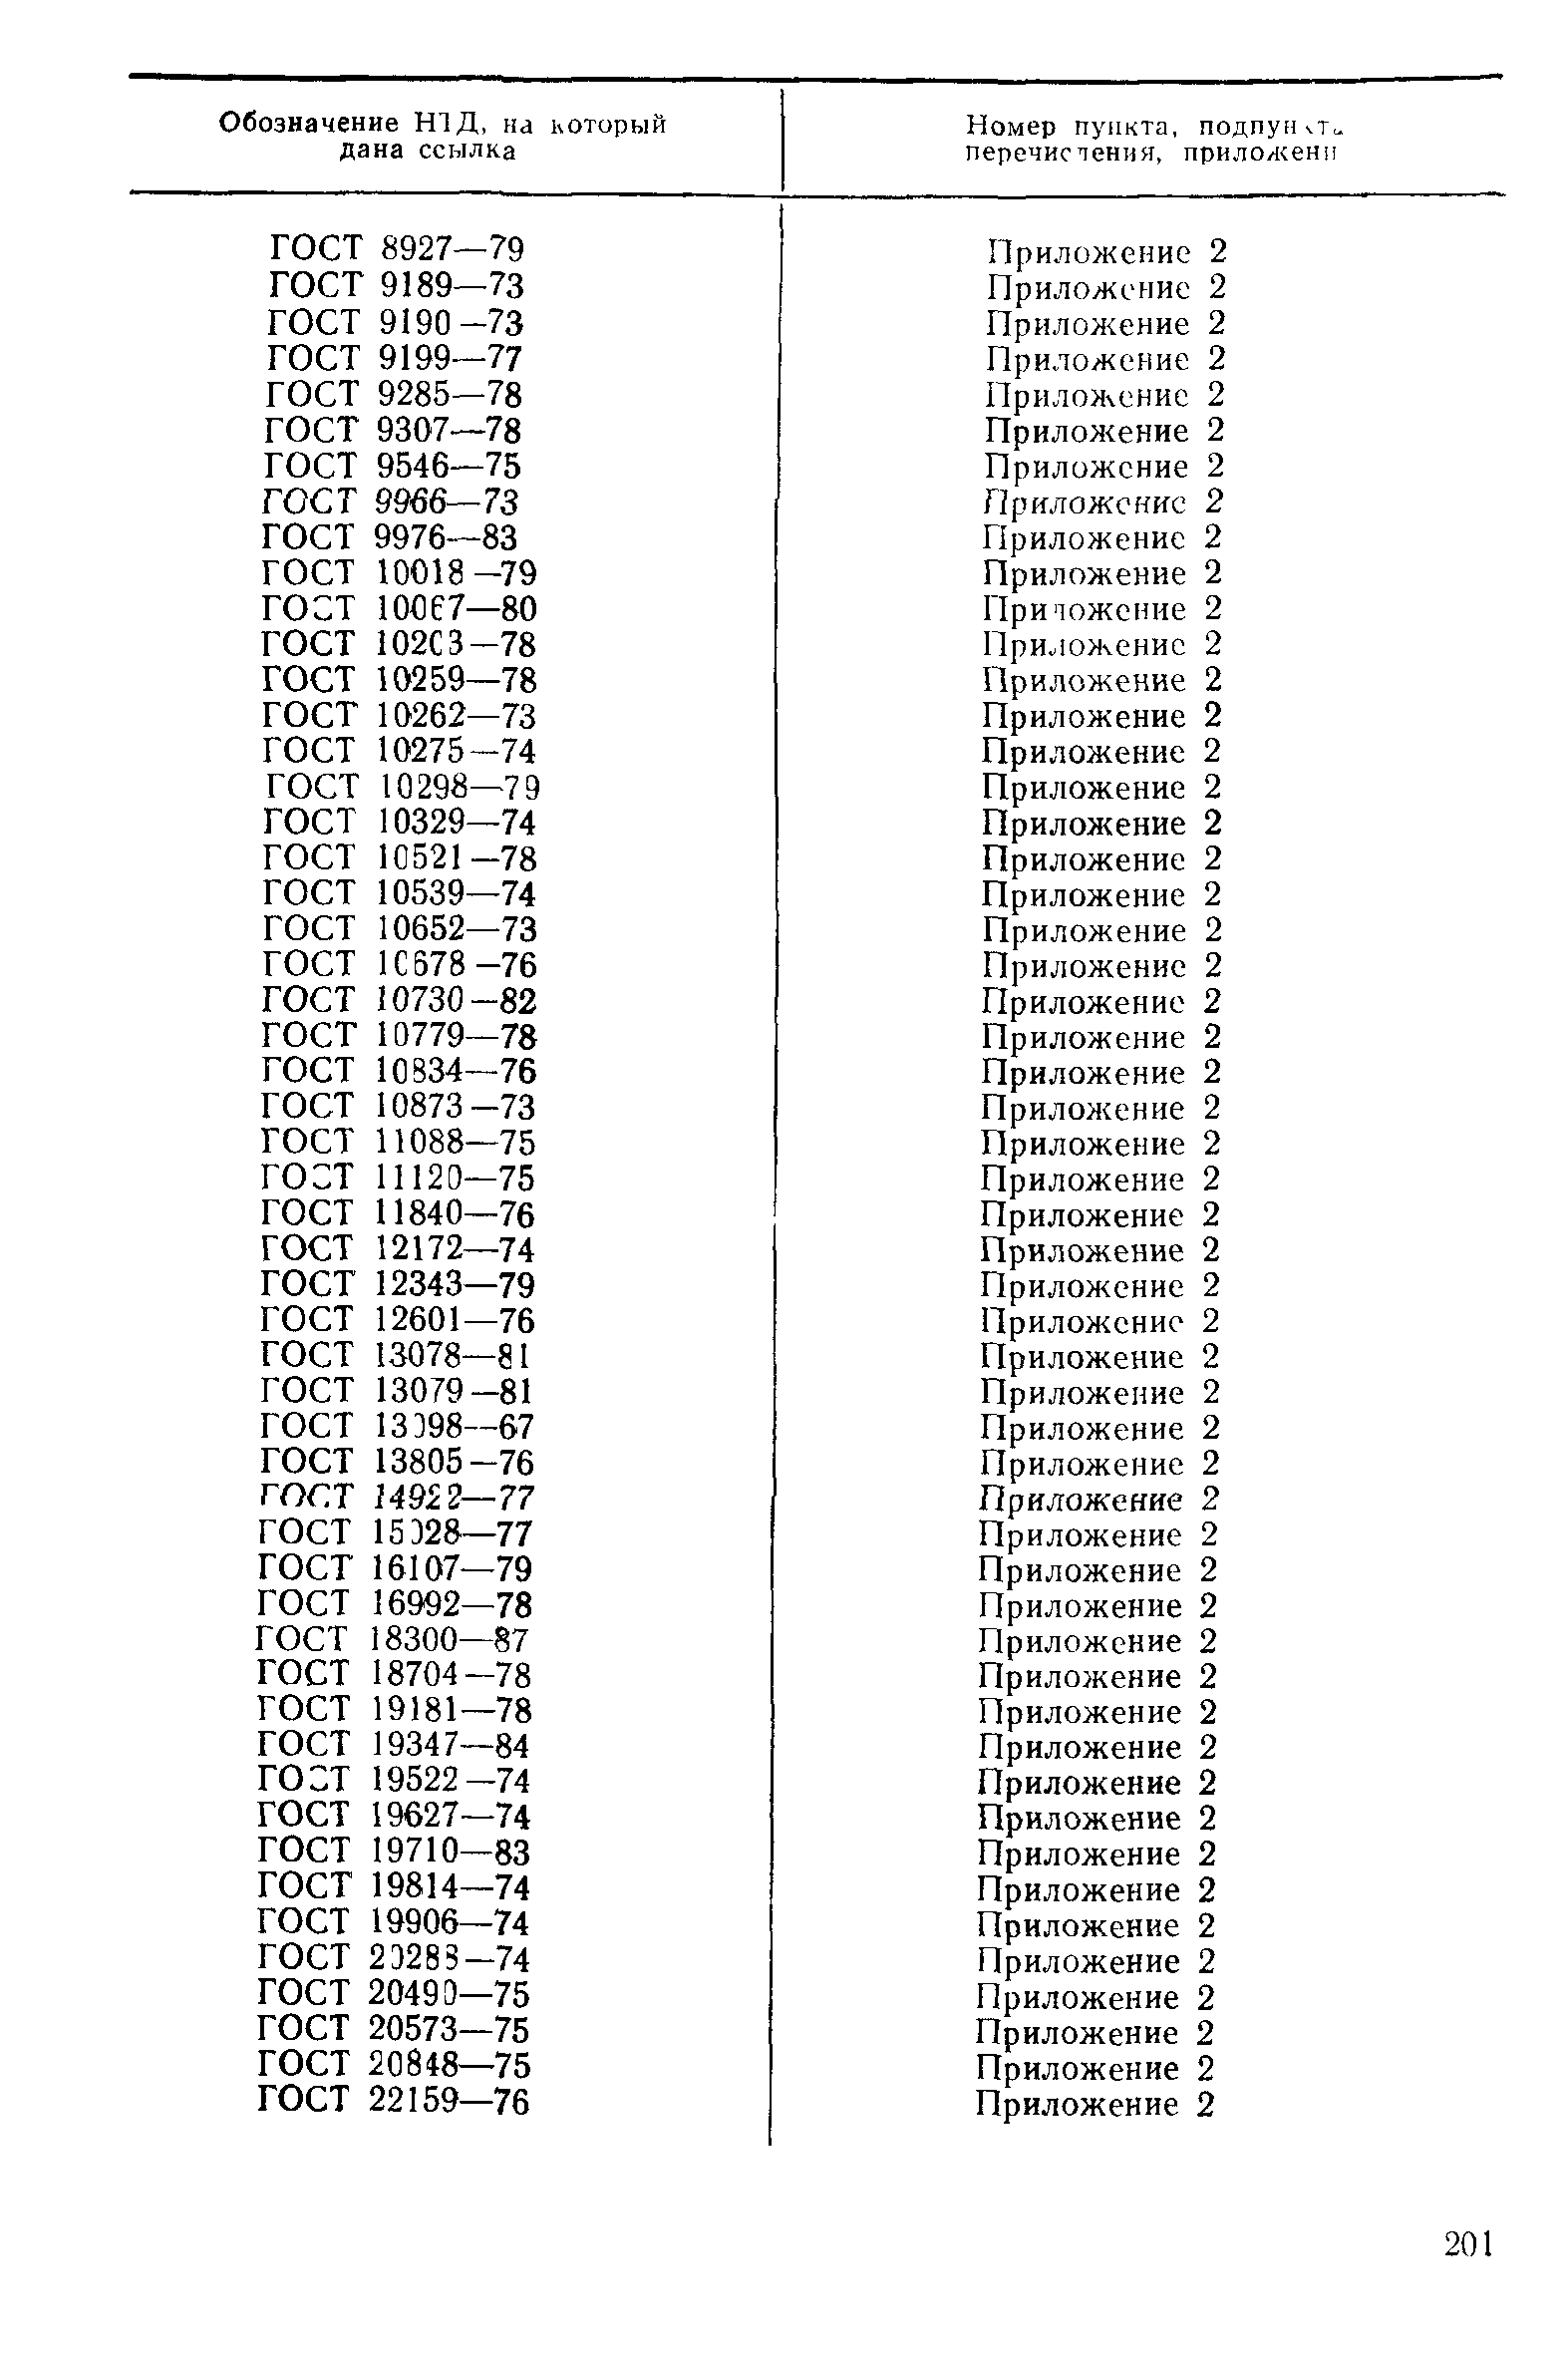 РД 50-664-88